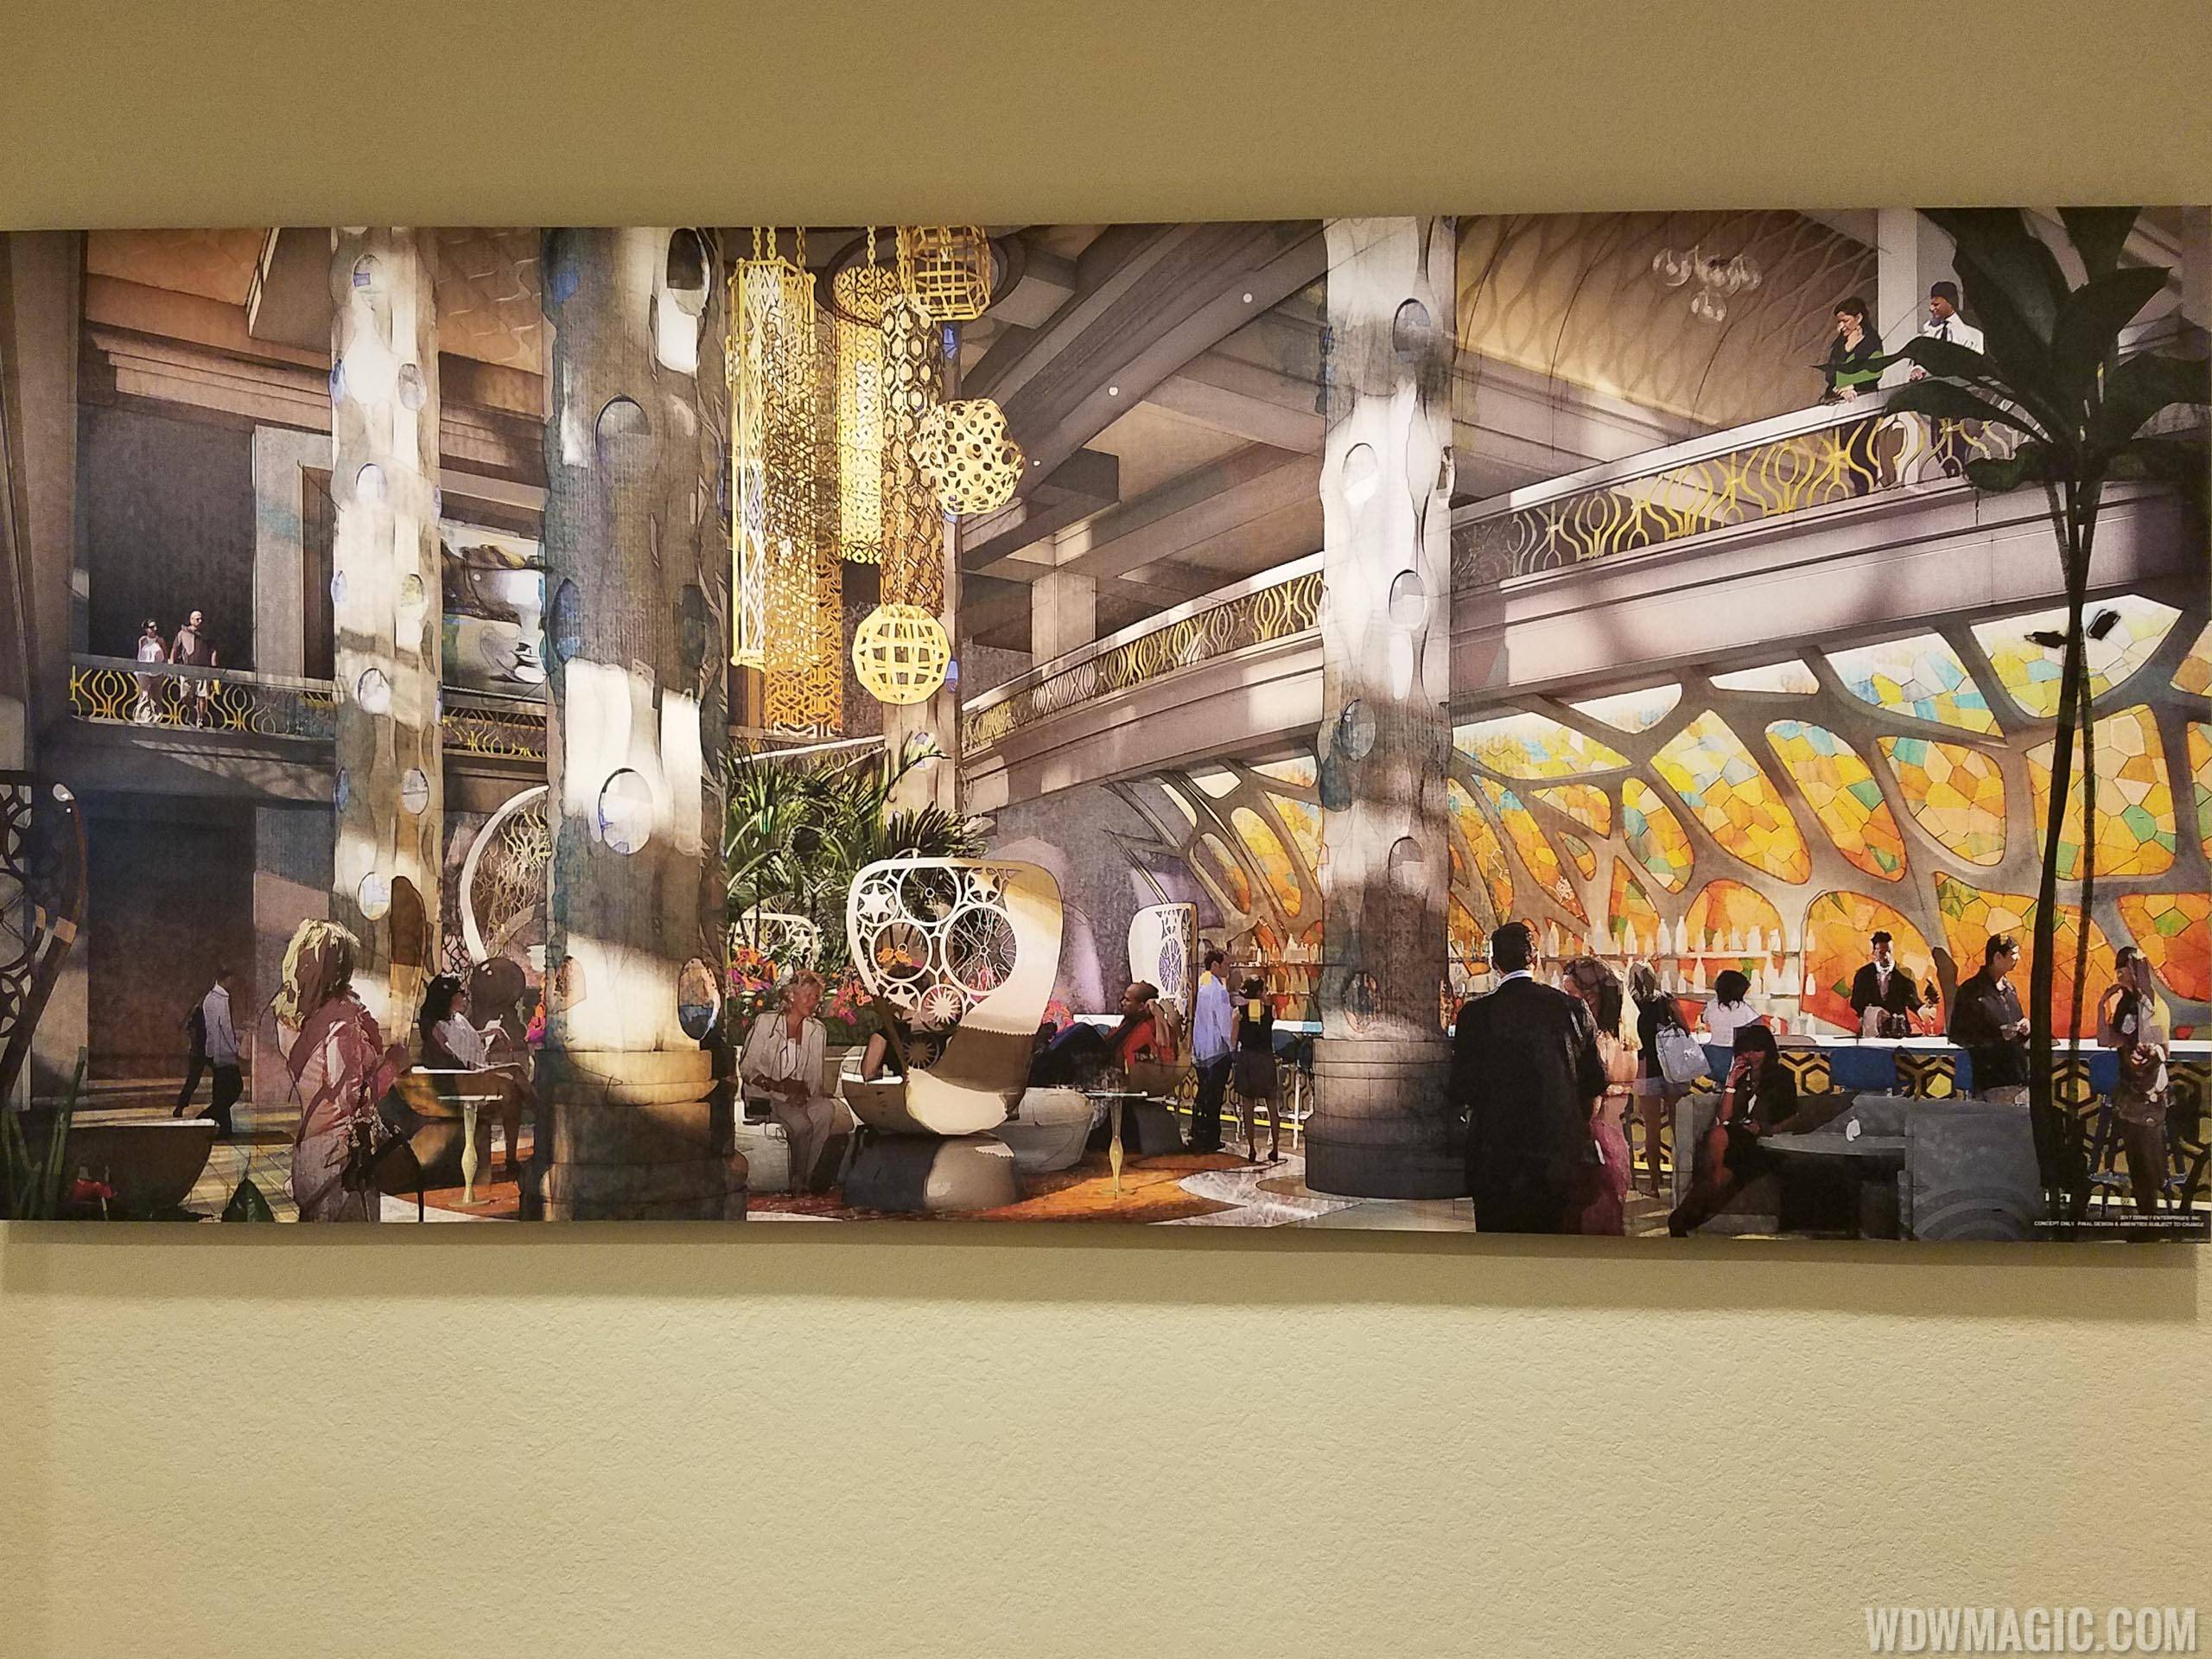 PHOTOS - Disney's Coronado Springs Resort expansion preview center